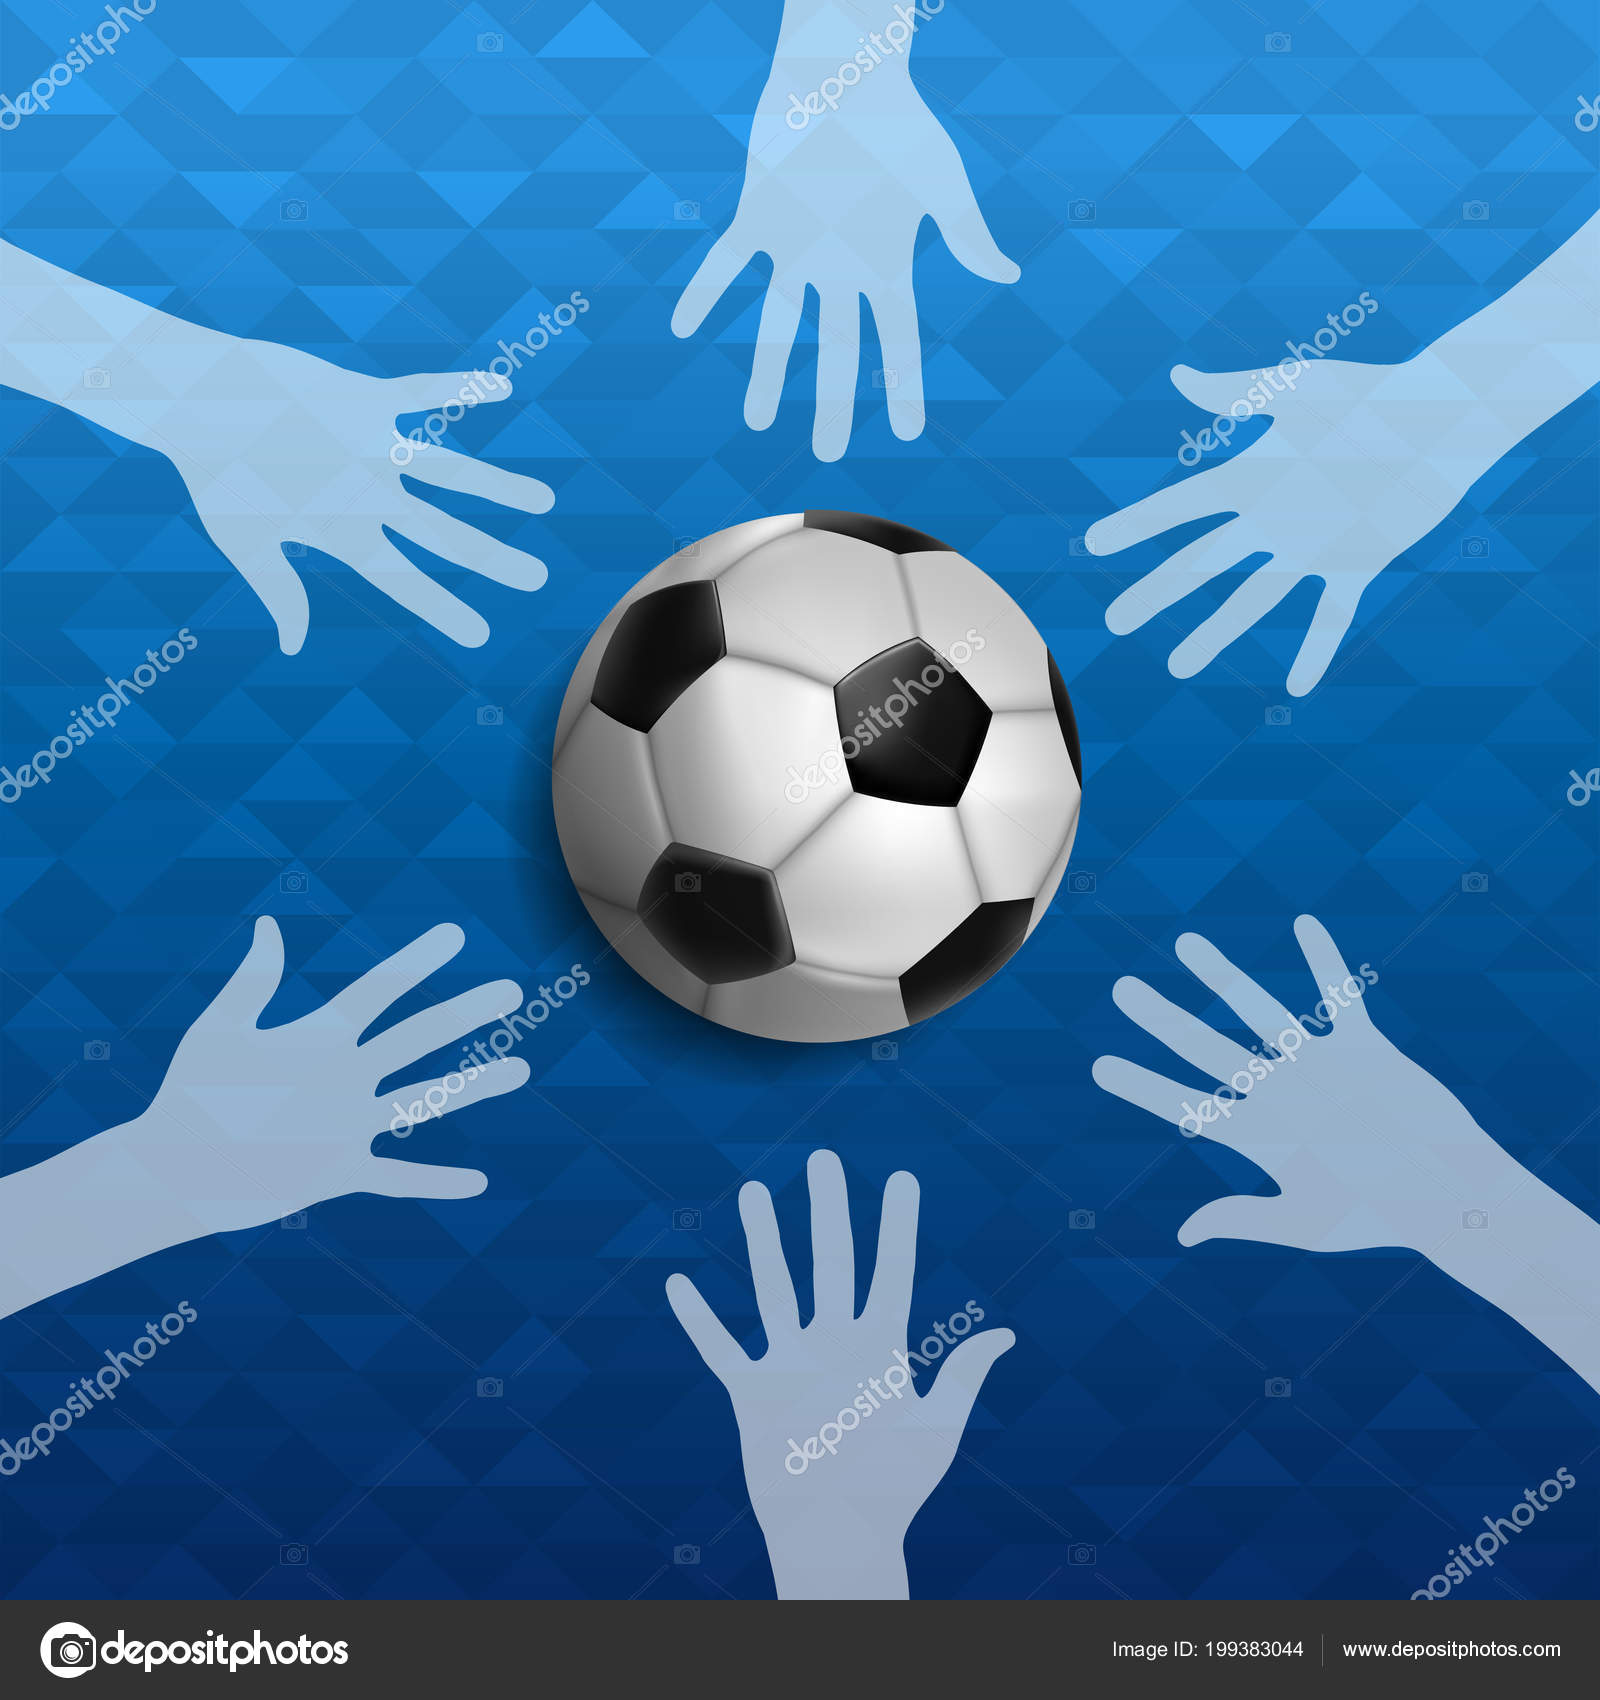 Vetores de As Pessoas Jogando Futebol No Campo De Ilustração De Vetores e  mais imagens de Brilhante - Luminosidade - iStock